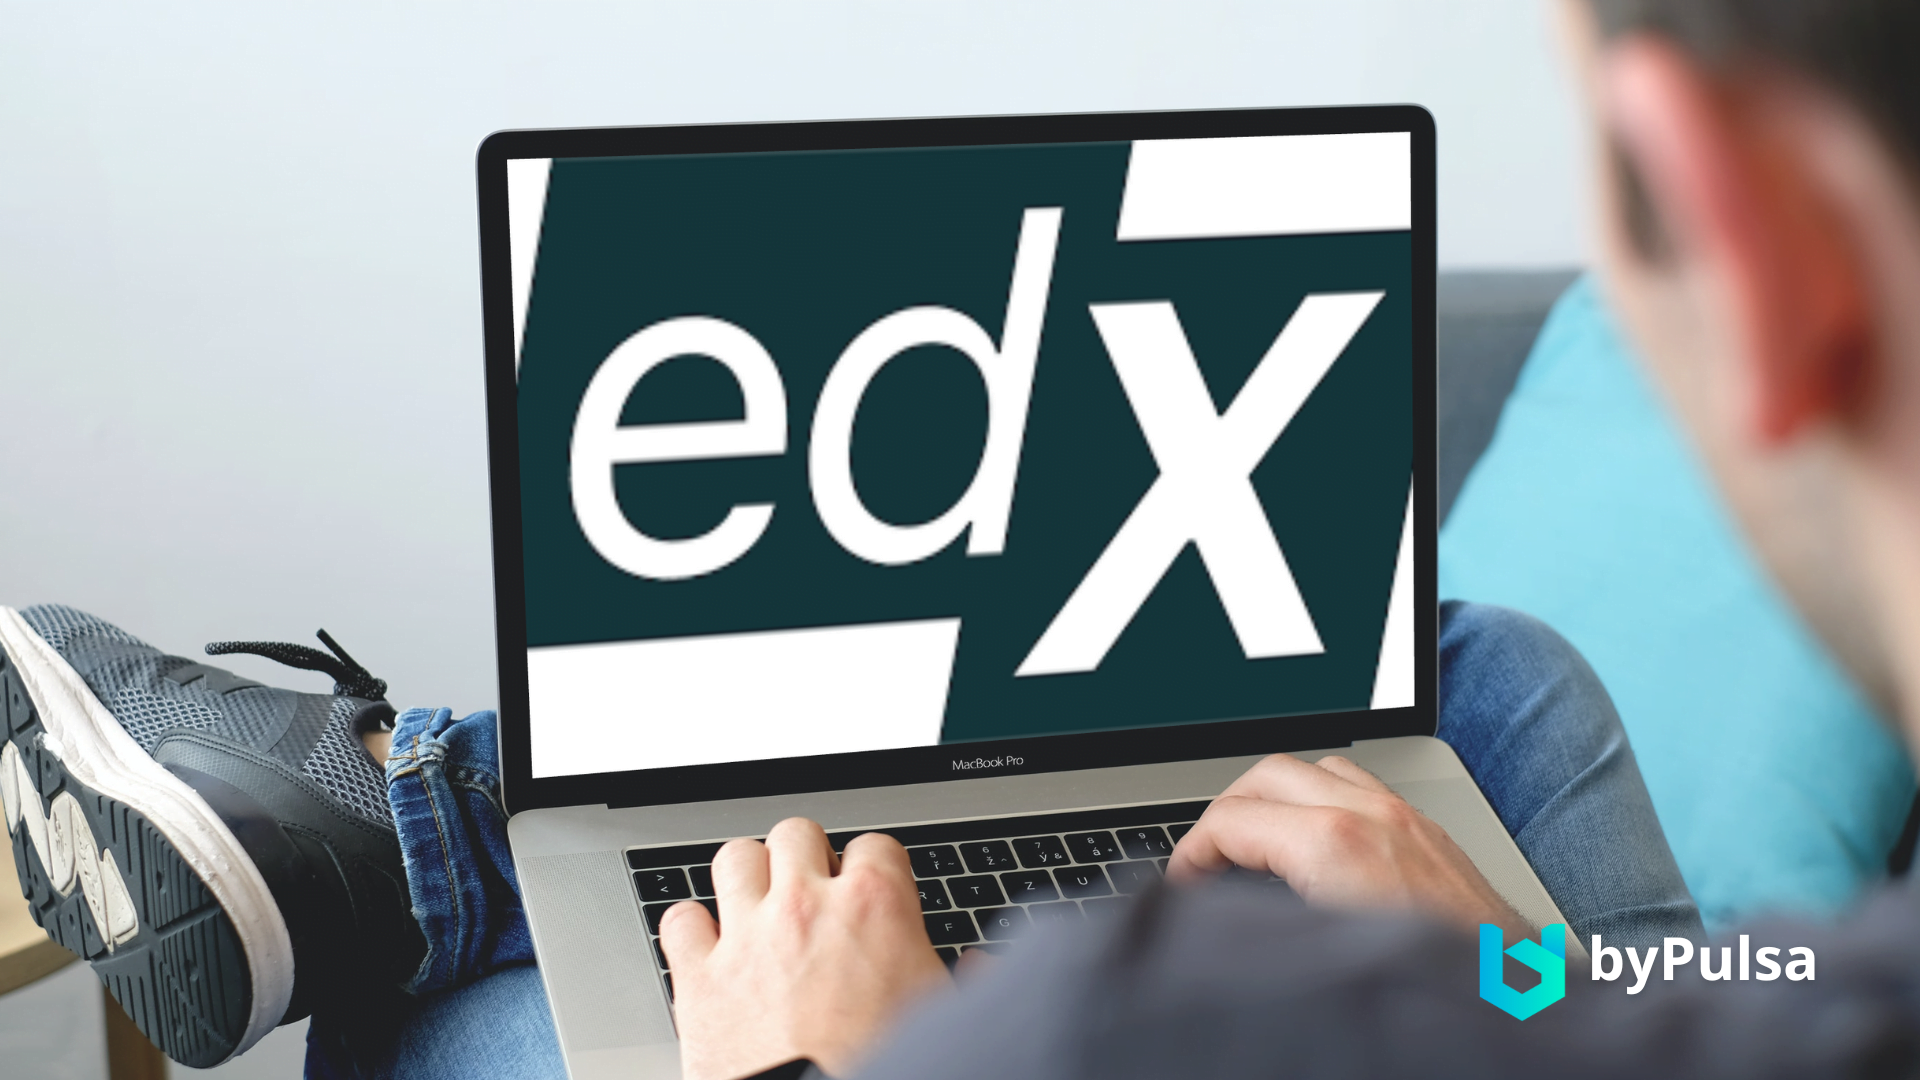 Situs untuk melakukan pengembangan diri yaitu edX dengan Course bertaraf internasional, apalagi salah satu pendiri dari edX adalah Harvard